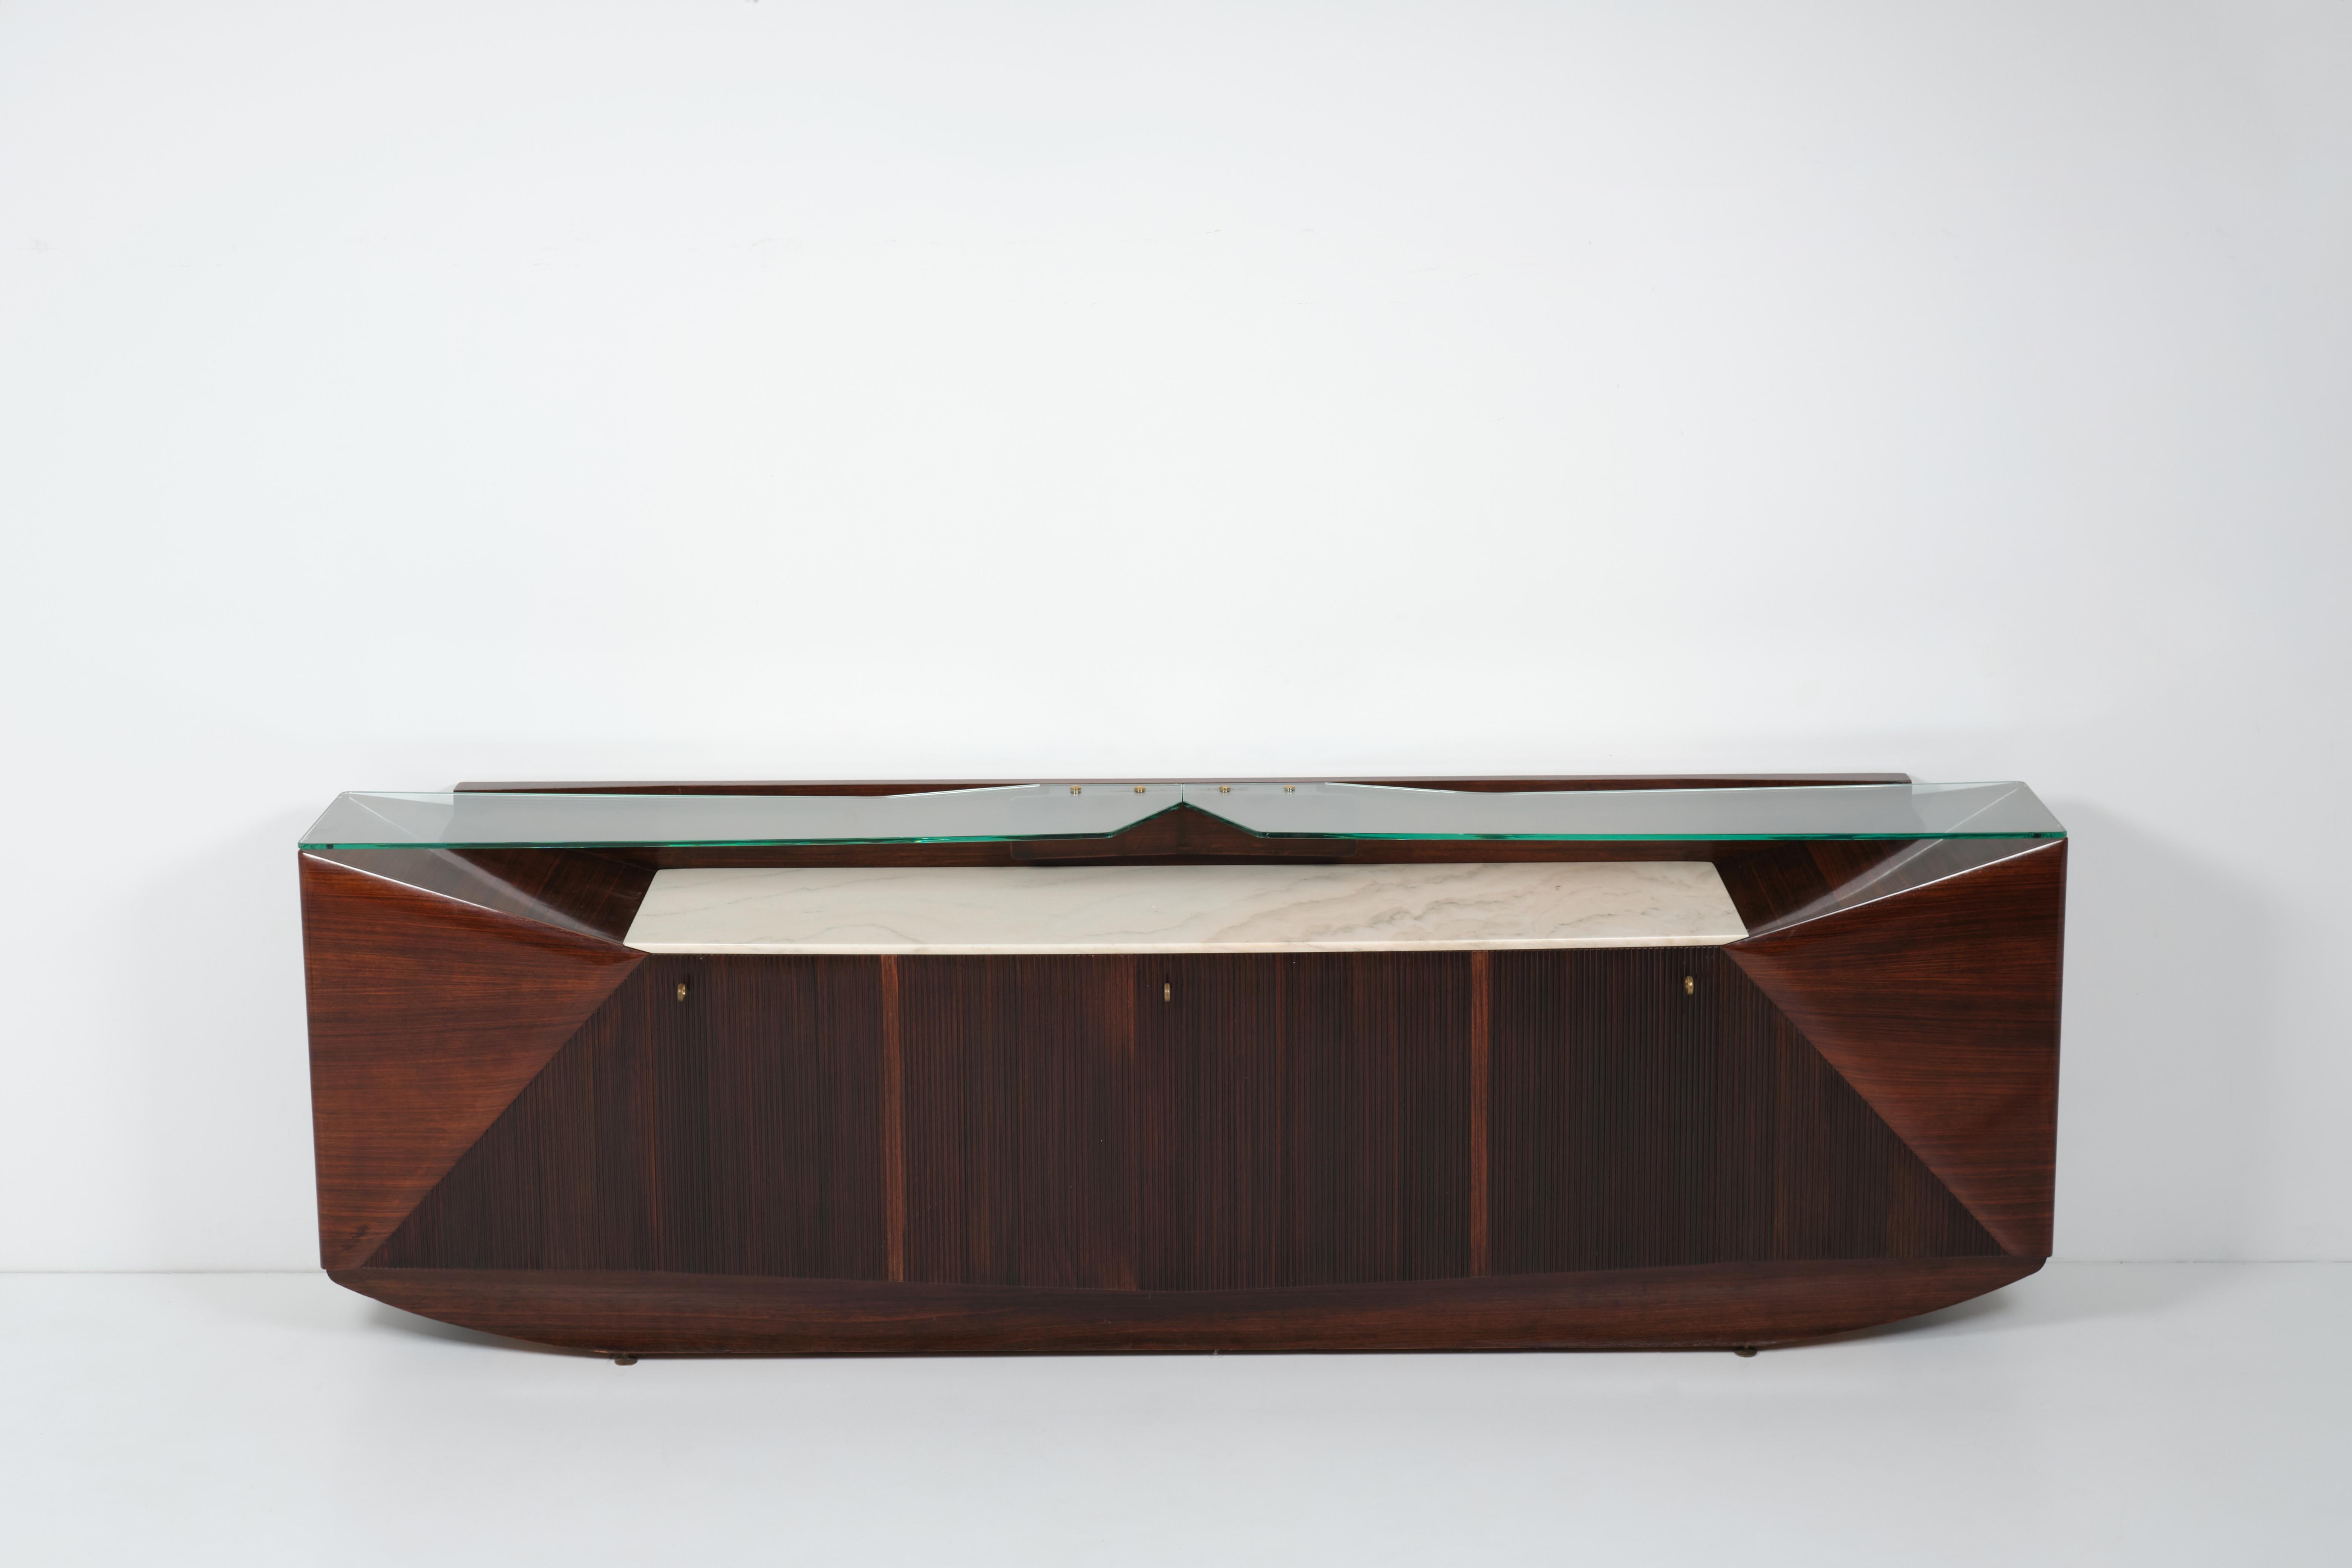 Dieses große Sideboard wurde von Dassi in den 50er Jahren hergestellt. Der Korpus aus Nussbaumholz wird durch auf verschiedenen Ebenen angebrachte Platten aus Marmor bzw. abgeschrägtem Glas verziert, während Messingdetails dieses solide und elegante